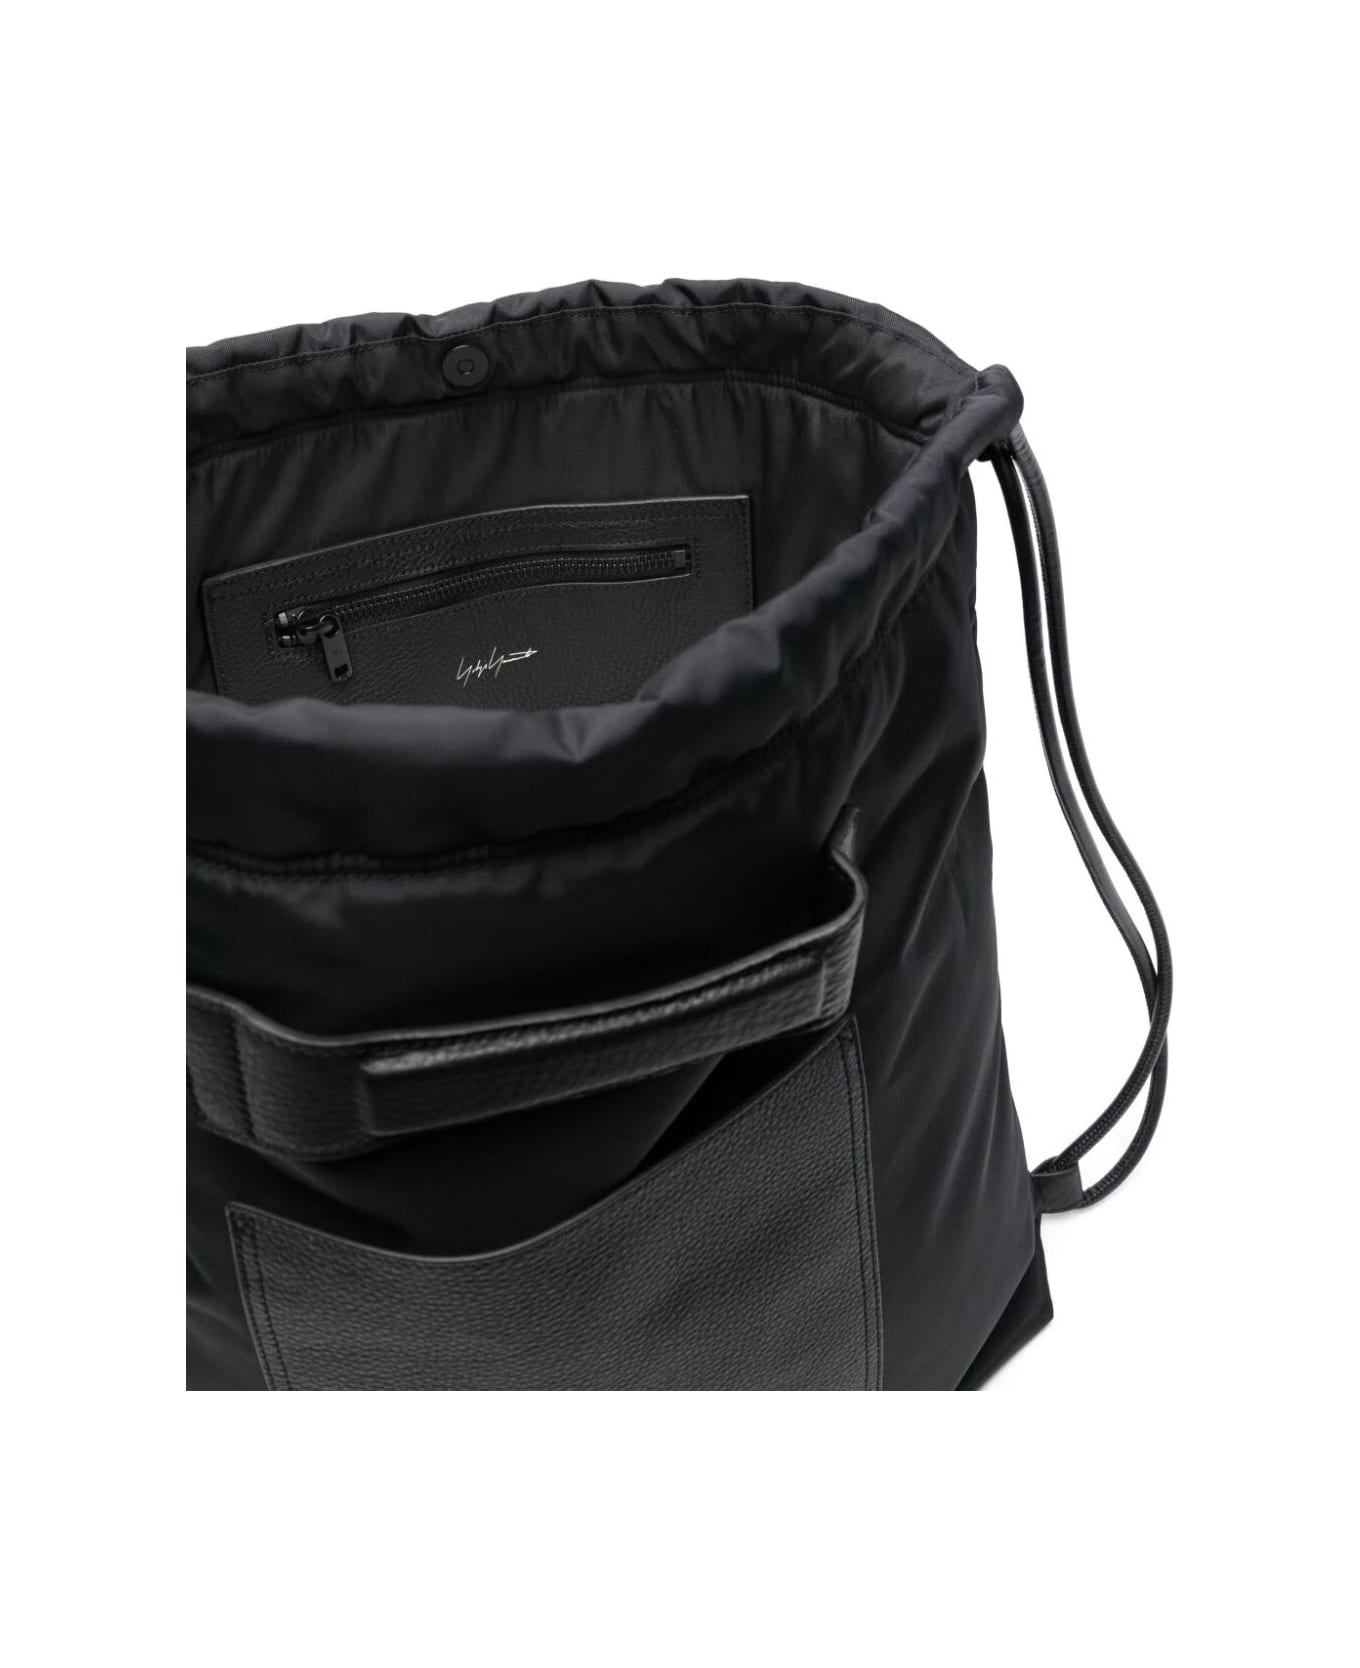 Y-3 Lux Gym Bag - Black バックパック